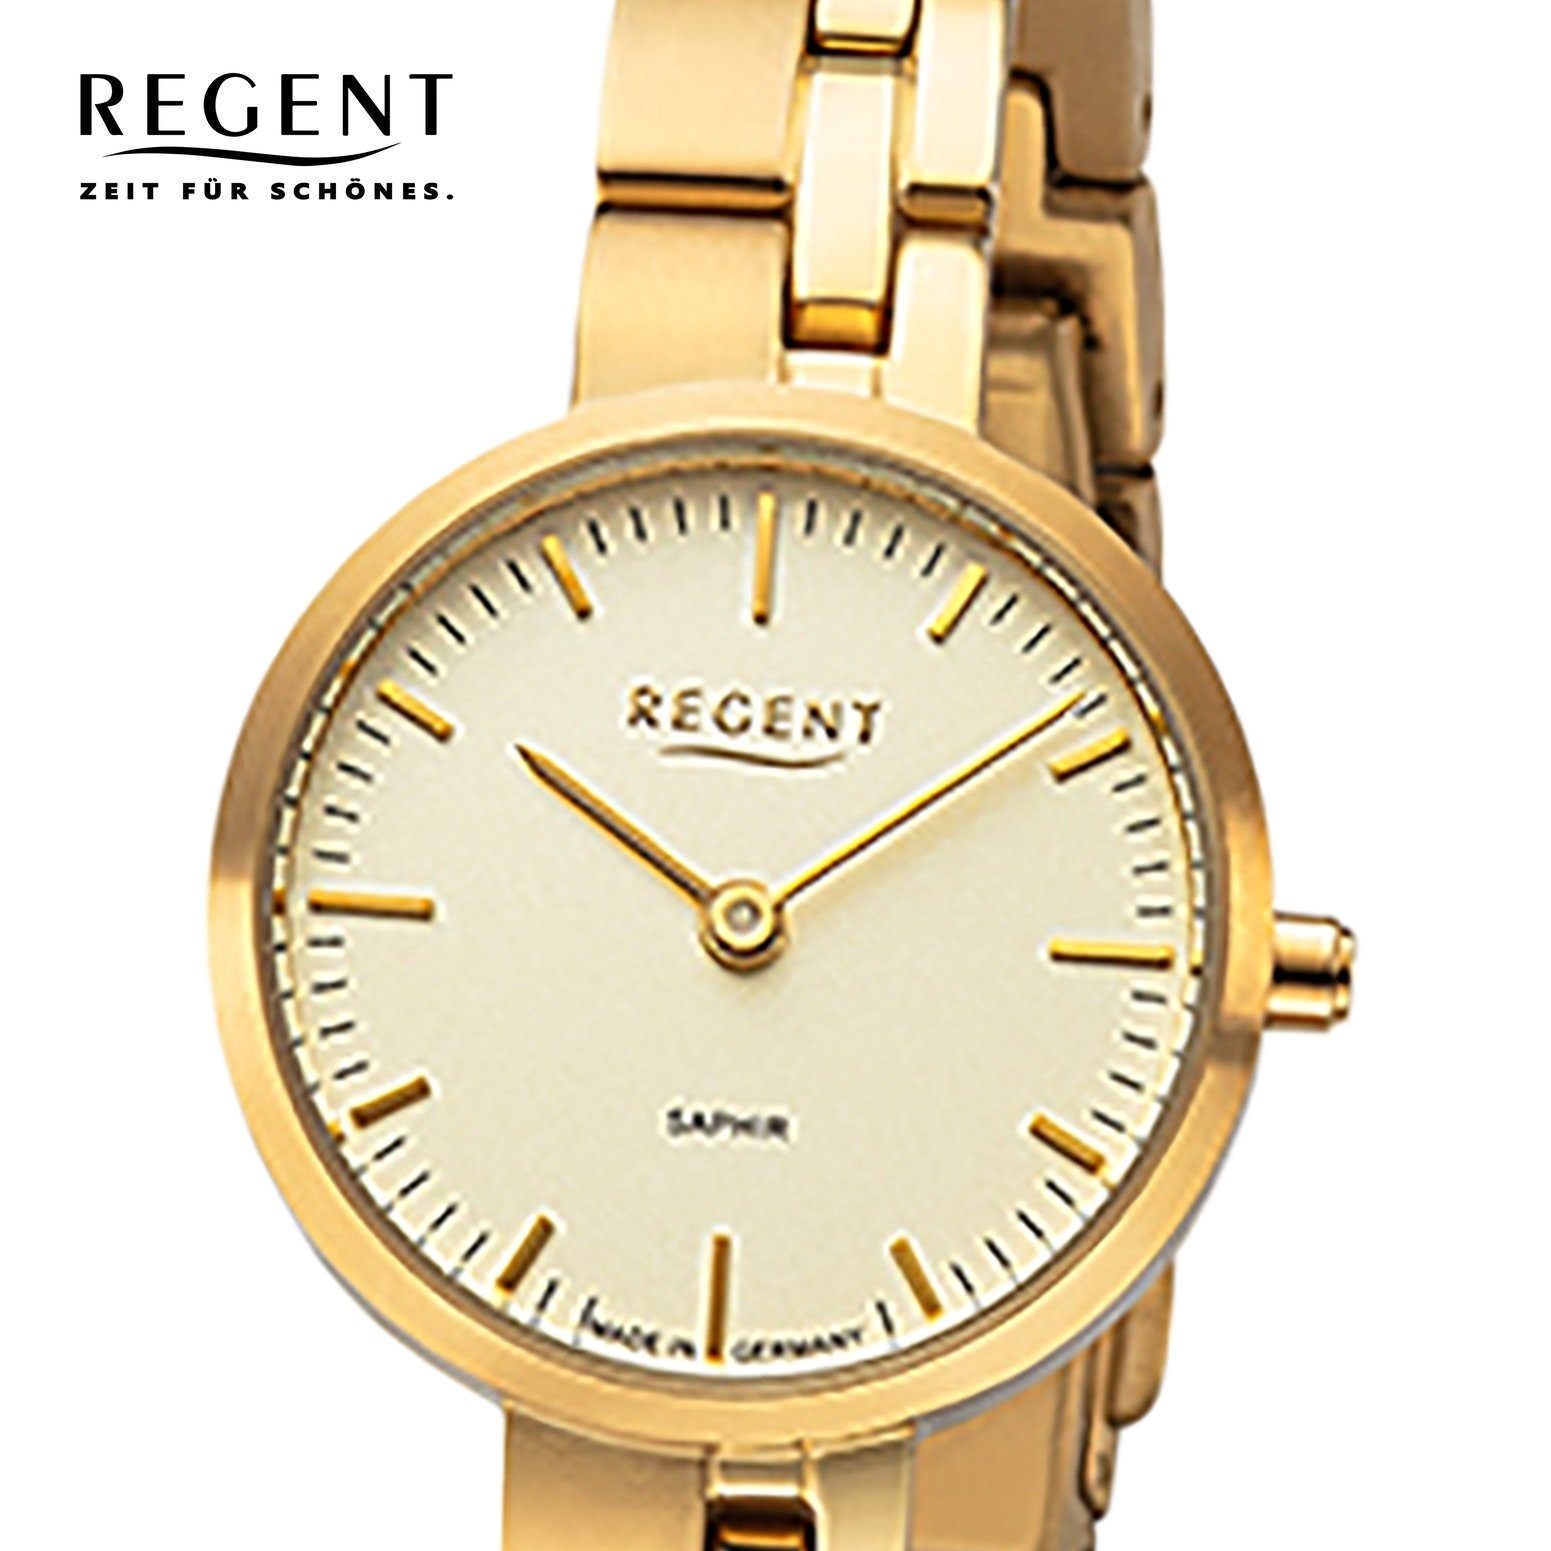 Regent Armbanduhr Titanbandarmband Armbanduhr Regent Damen (ca. klein Analoganzeige, Quarzuhr rund, Damen 26mm),